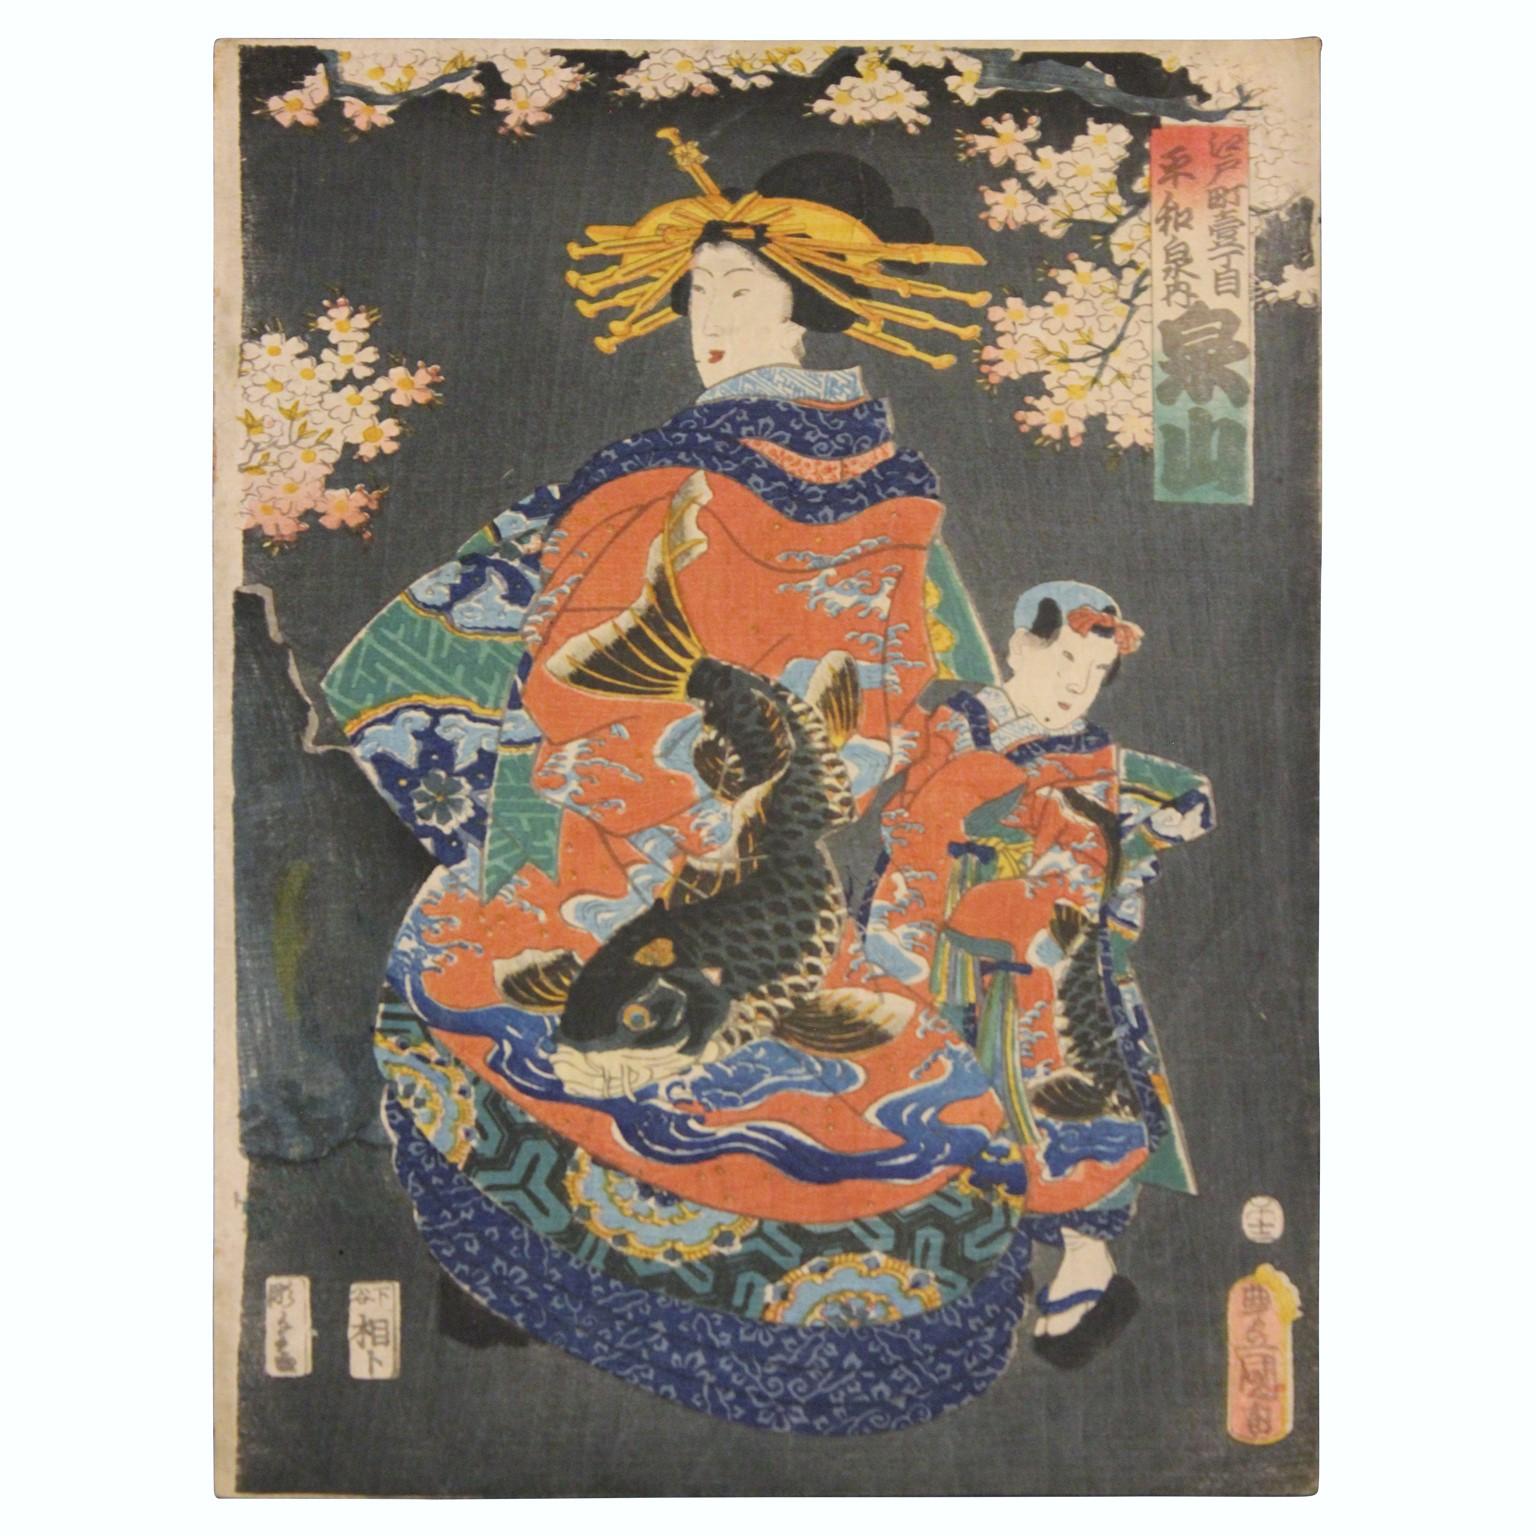 Utagawa Kunisada (Toyokuni III) Portrait Print - Traditionally Dressed Beauty with Child and Koi Fish